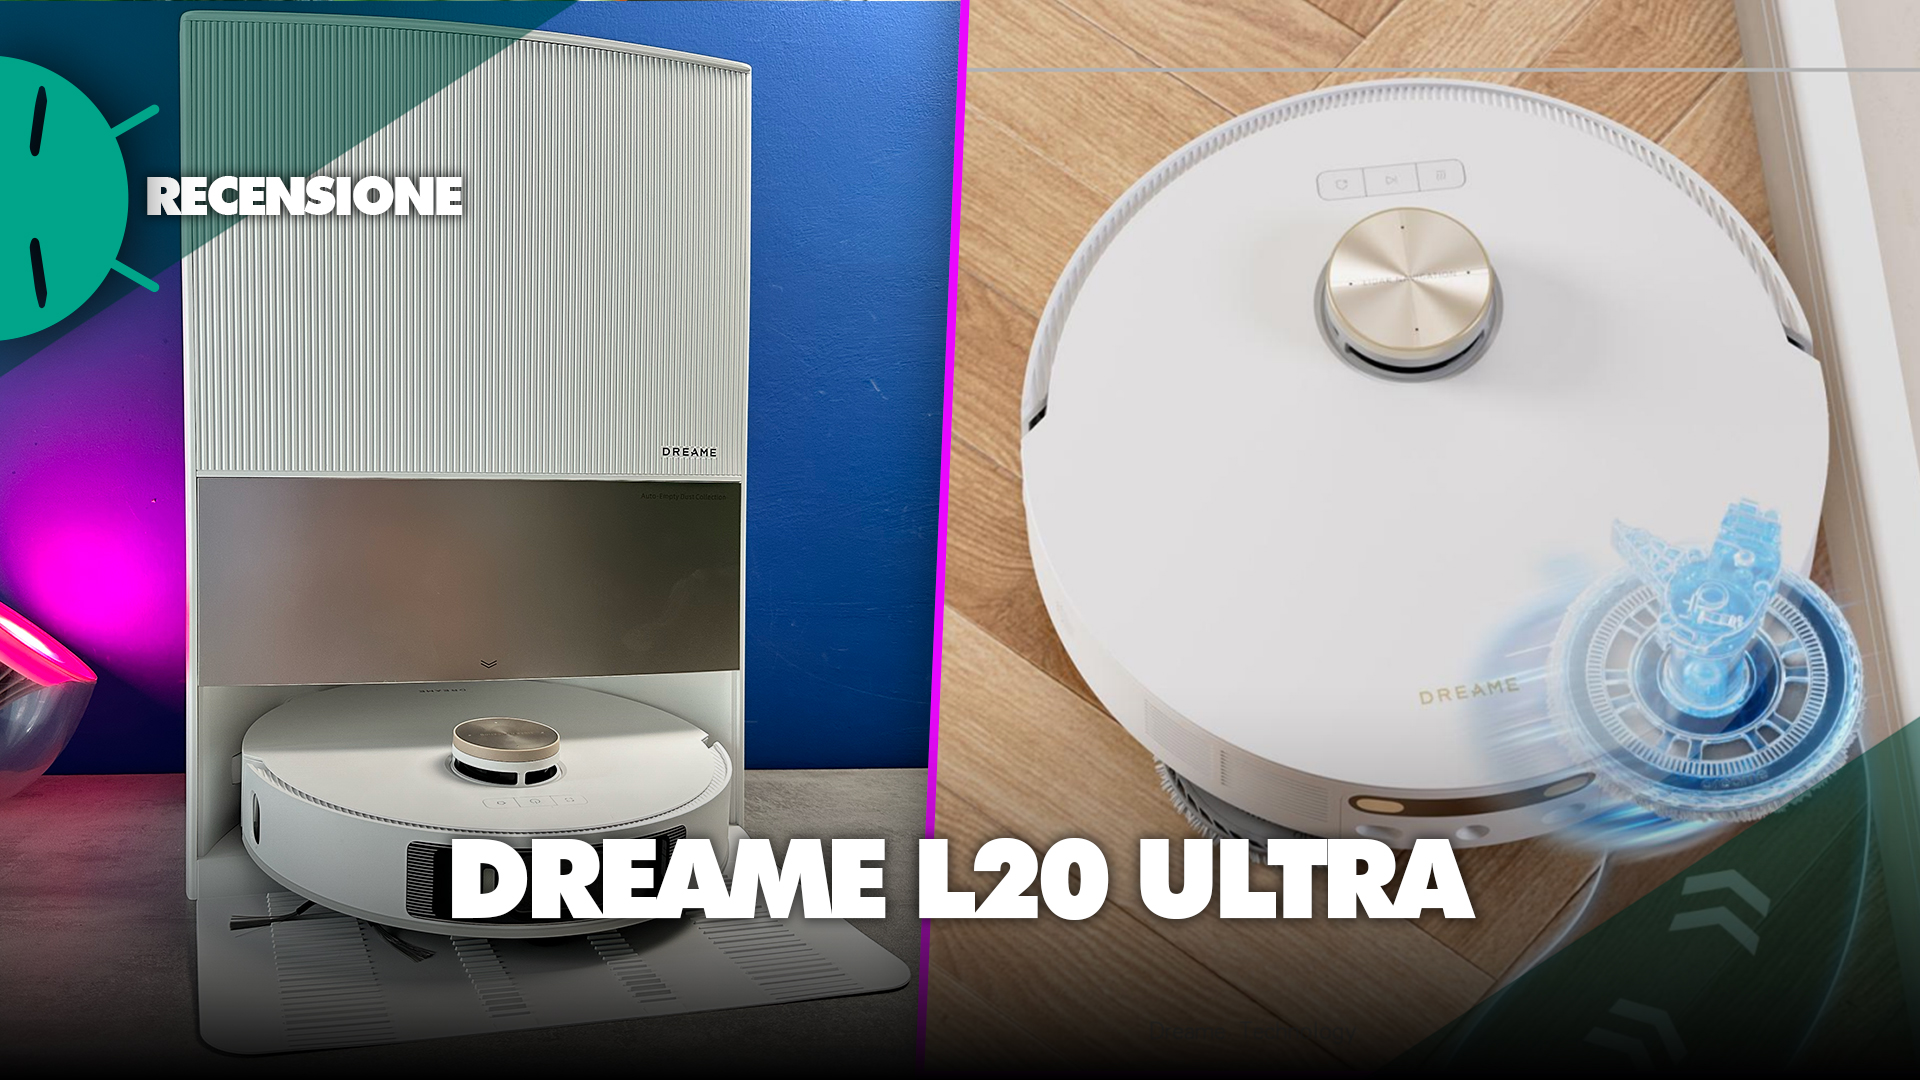 Dreame Soluzione Detergente per Aspirapolvere Robot Dreame L20 Ultra, –  Dreame Italy